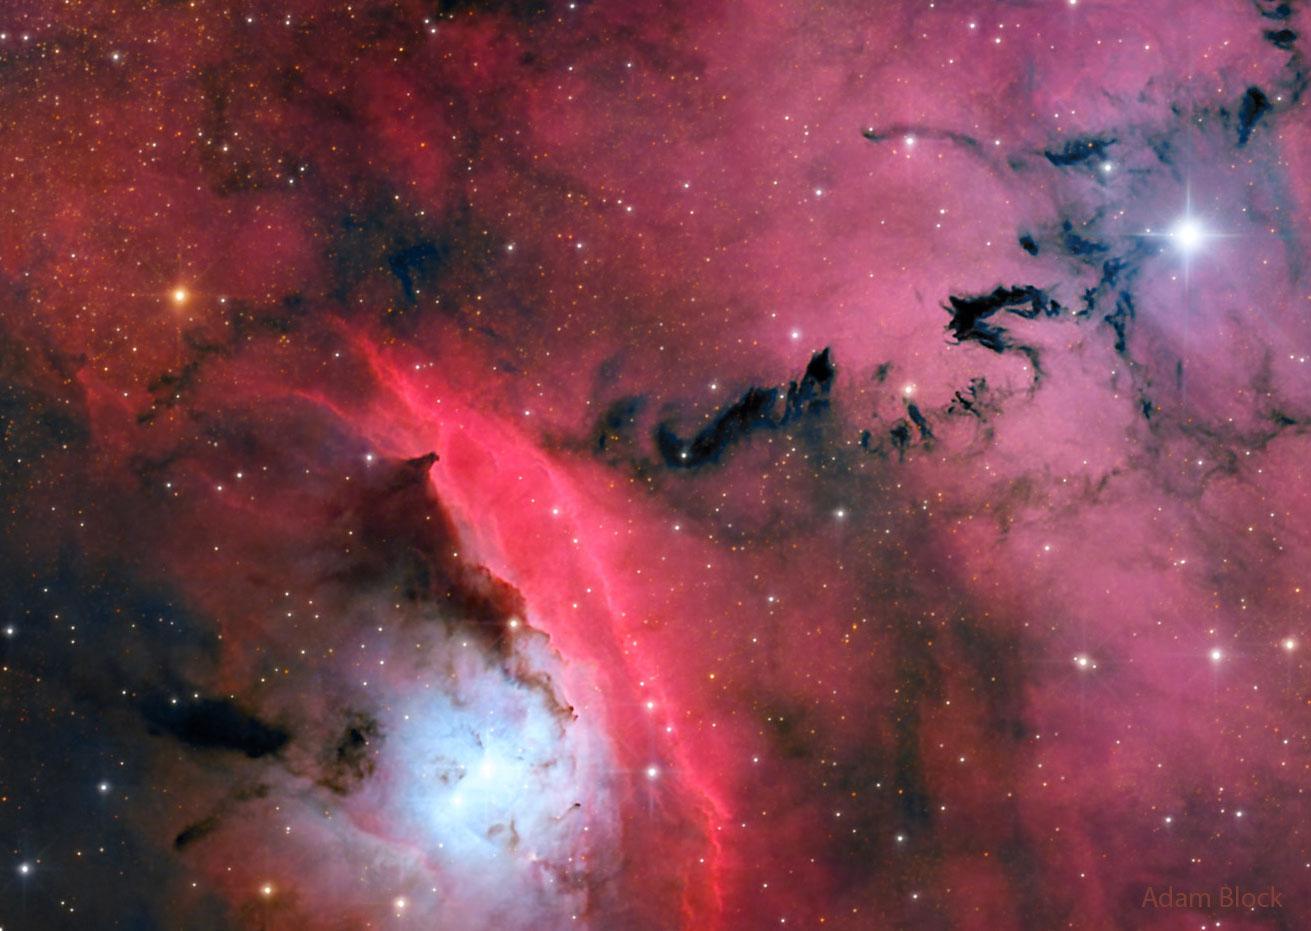 منطقة تشكّل نجومٍ مُزدحمة تُبرزها السُّحُب المُتوهّجة الحمراء والغبار المُظلم ذو الأشكال المُنذِرة بالشؤم.